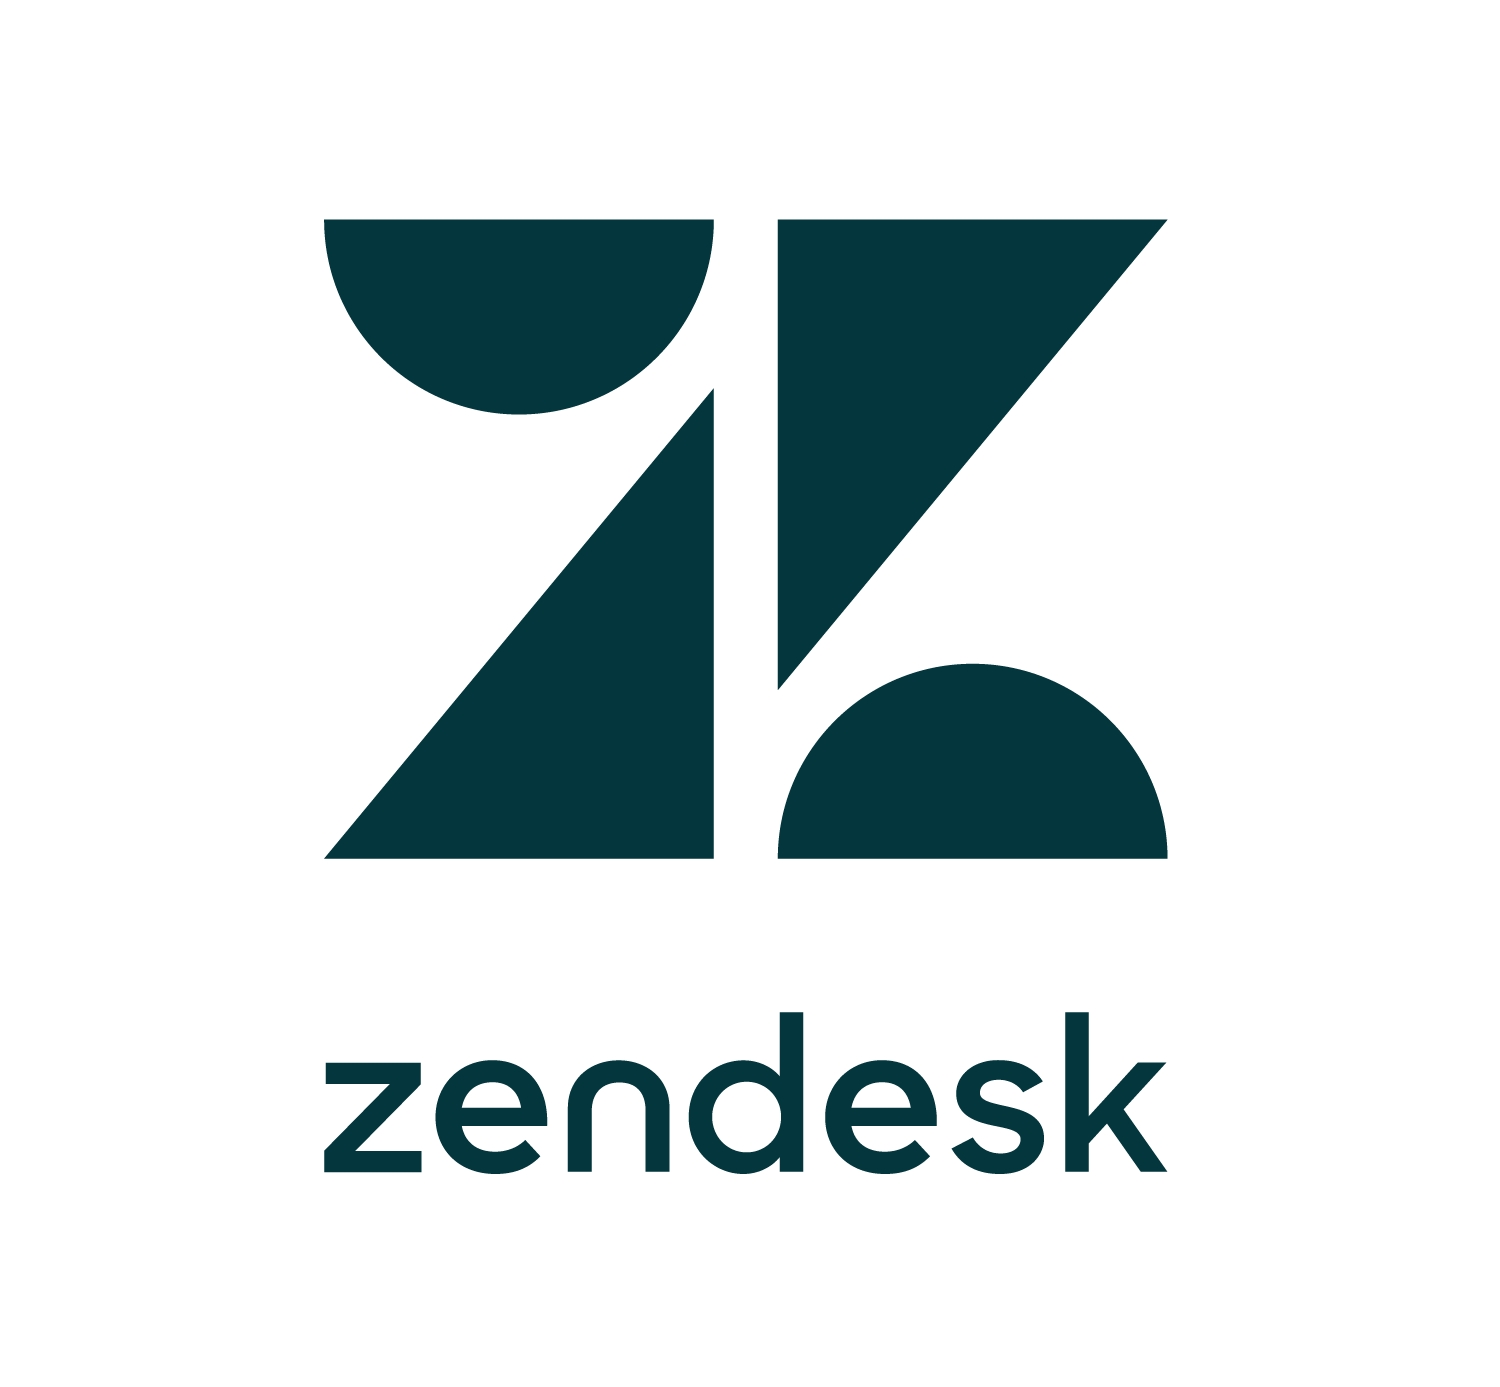 https://mms.businesswire.com/media/20191108005582/en/553134/5/Asset_3_Zendesk_Main_Logo.jpg 